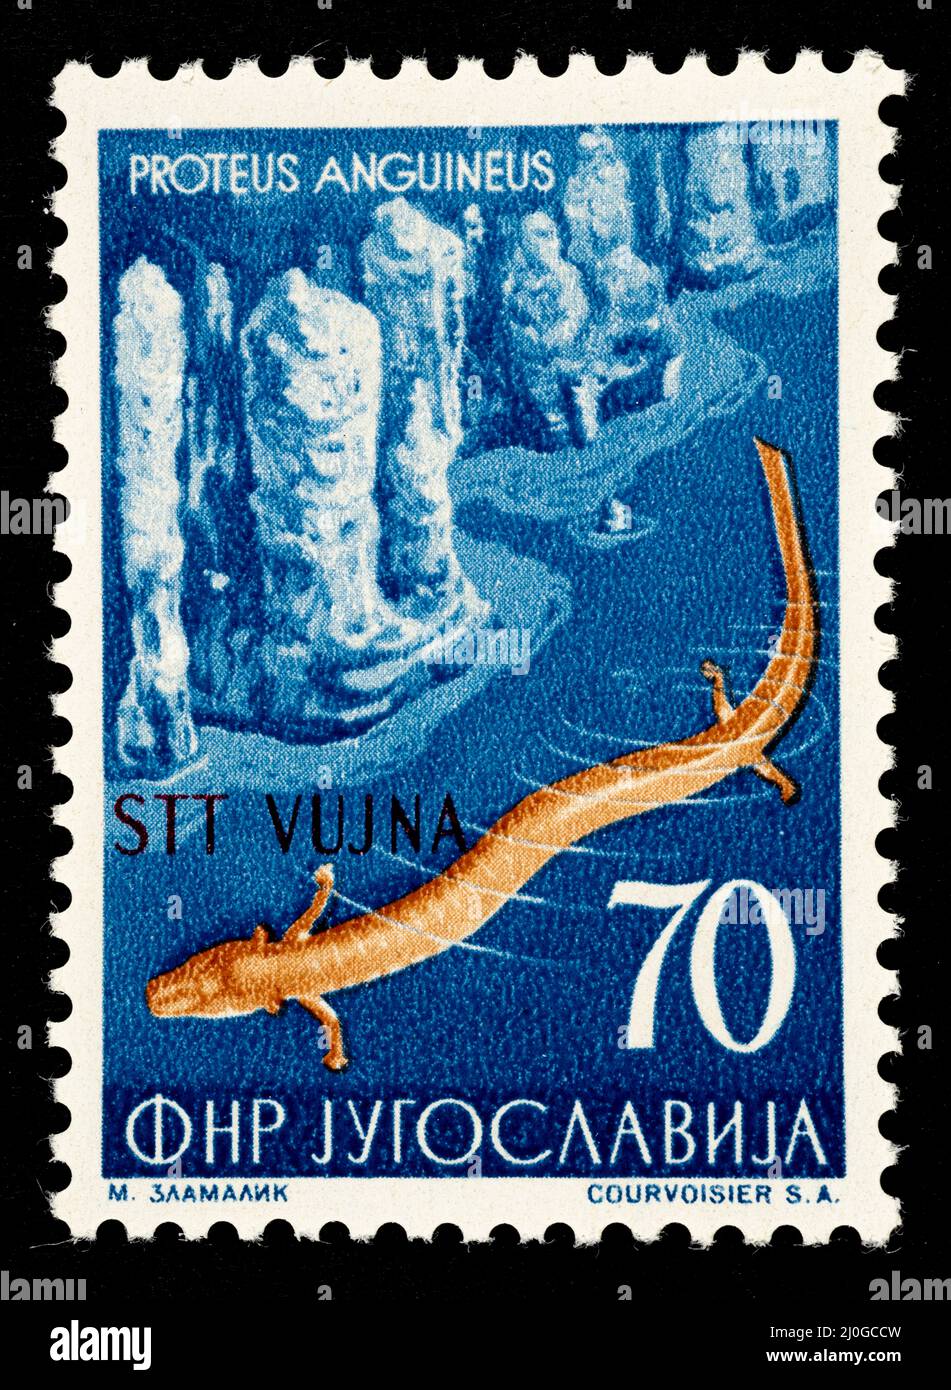 Herausgegeben vom ehemaligen Jugoslawien überdruckt STT VUJNA, freies Gebiet von Triest, Zone B, verwaltet von 1948 bis 1954. Stockfoto